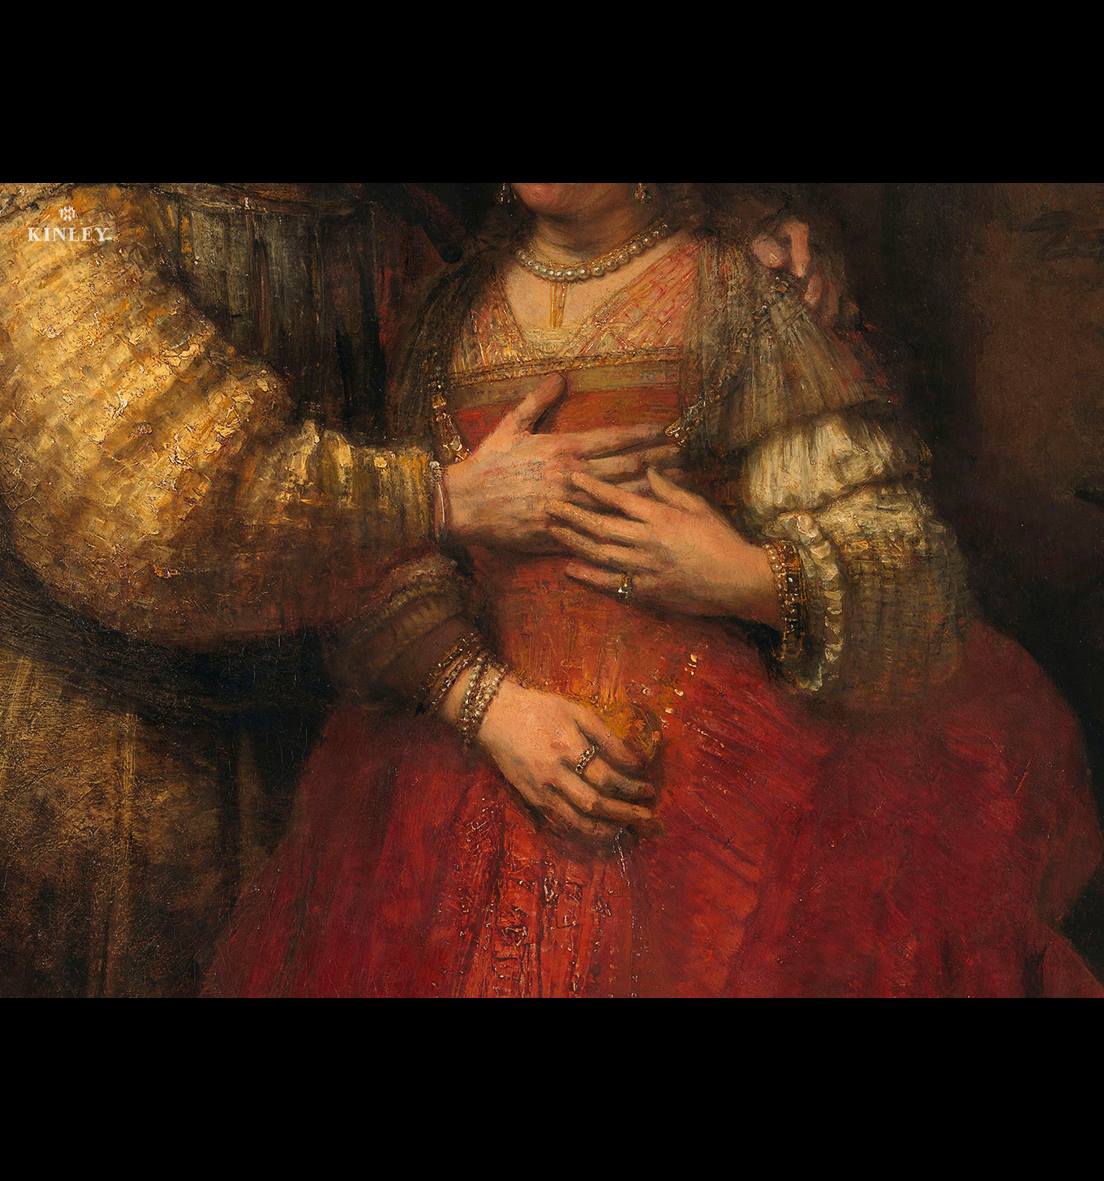 Rembrandt z The National Gallery w Londynie i Rijksmuseum w Amsterdamie